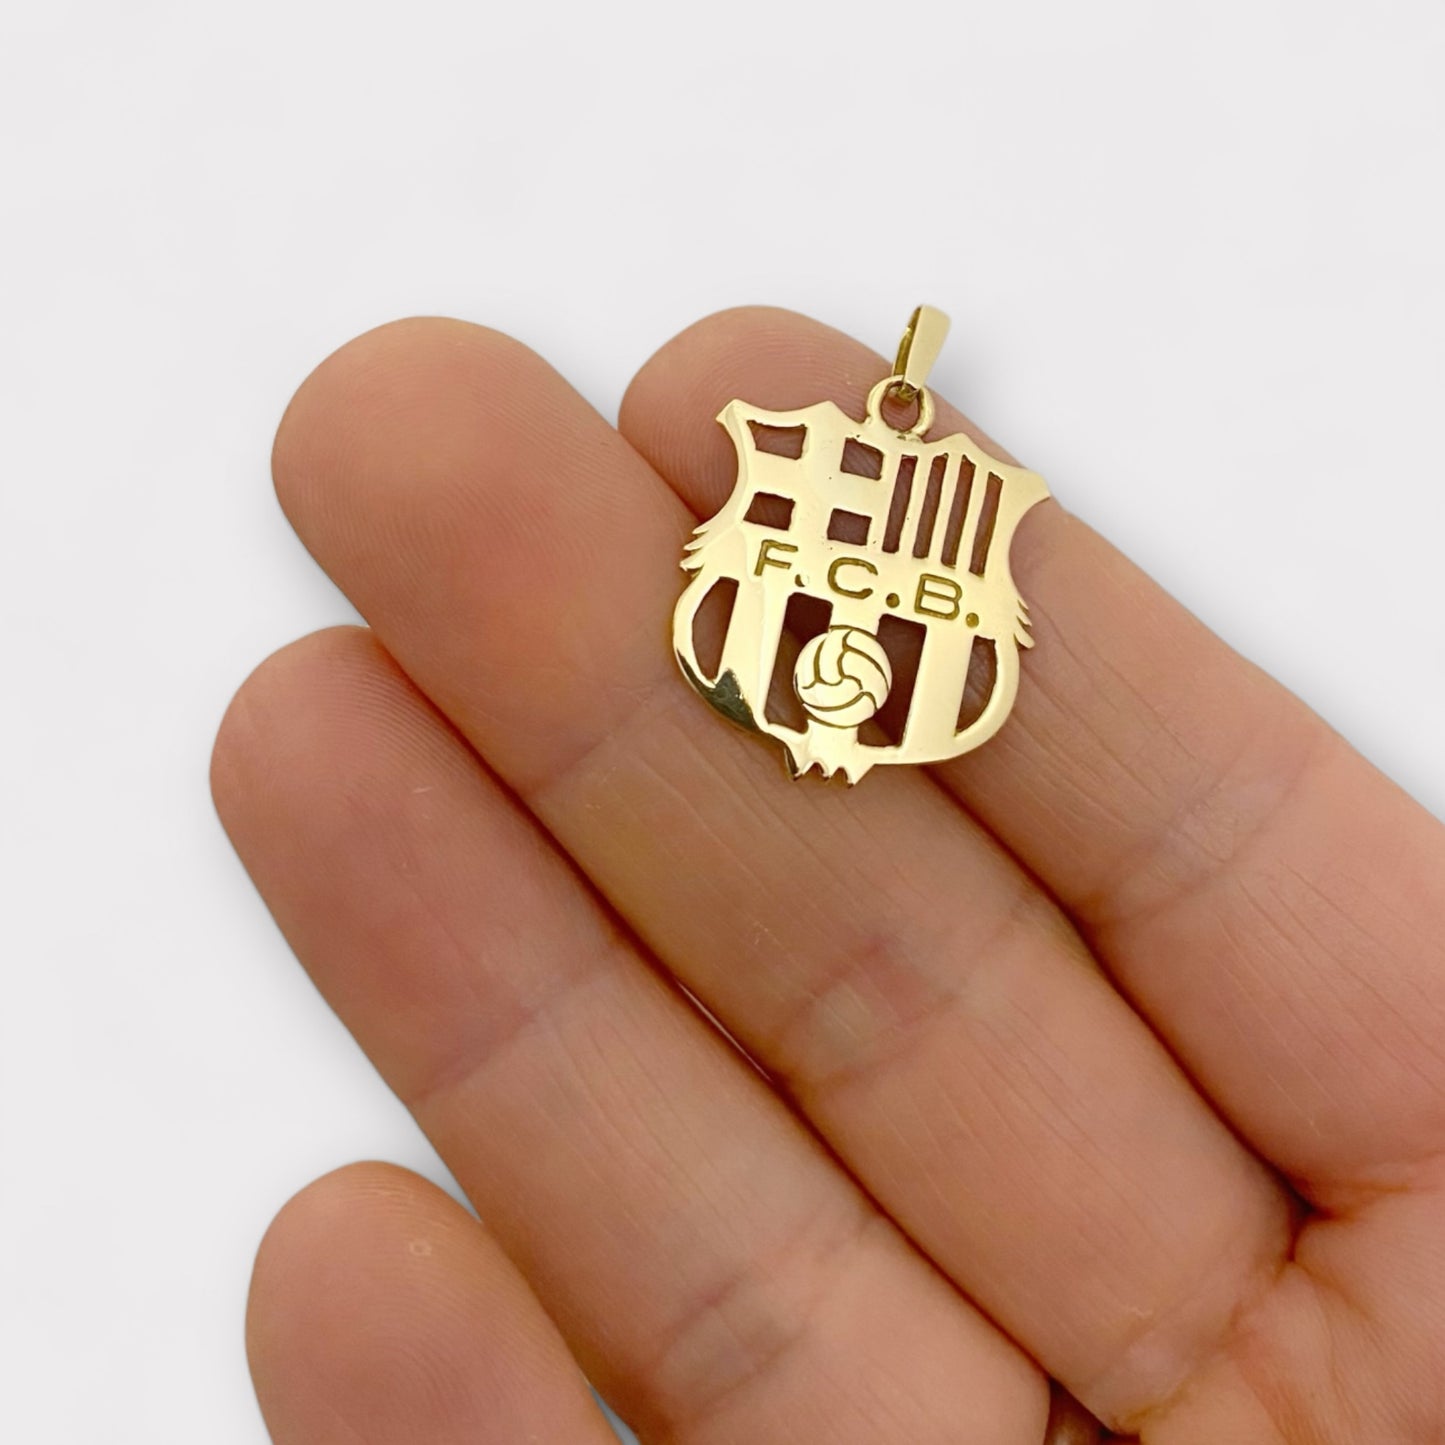 Colgante con insignia del escudo del Barça realizado en Oro de 18kt. Escudo futbol club Barcelona - Barça oro 18kt. Joyeria Ian'or, donde comprar y vender oro y joyas de segunda mano restauradas al mejor precio